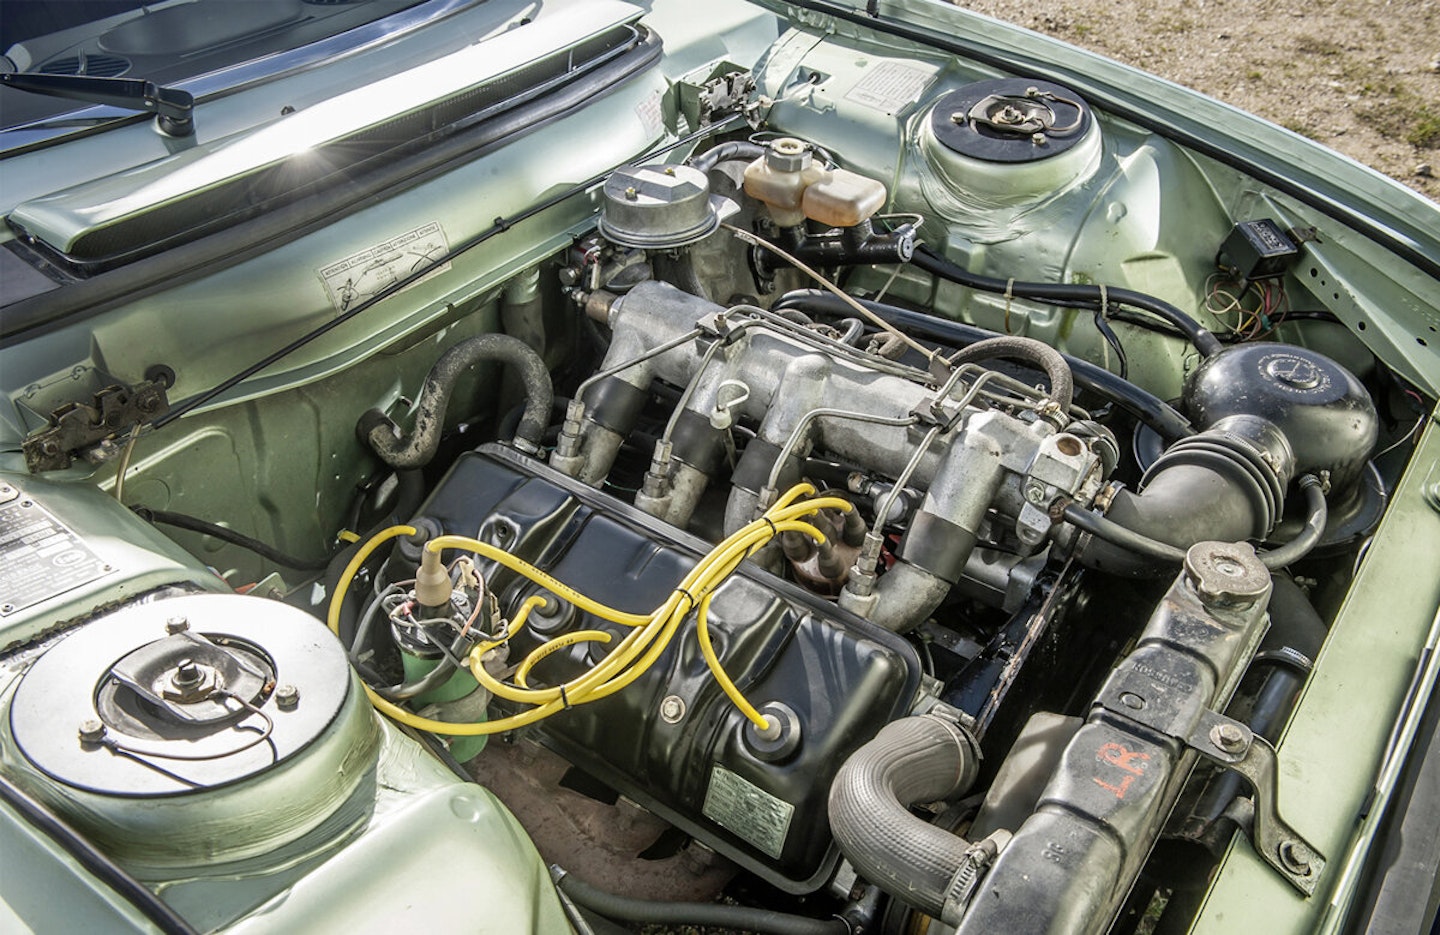 Peugeot 504 Coupé engine